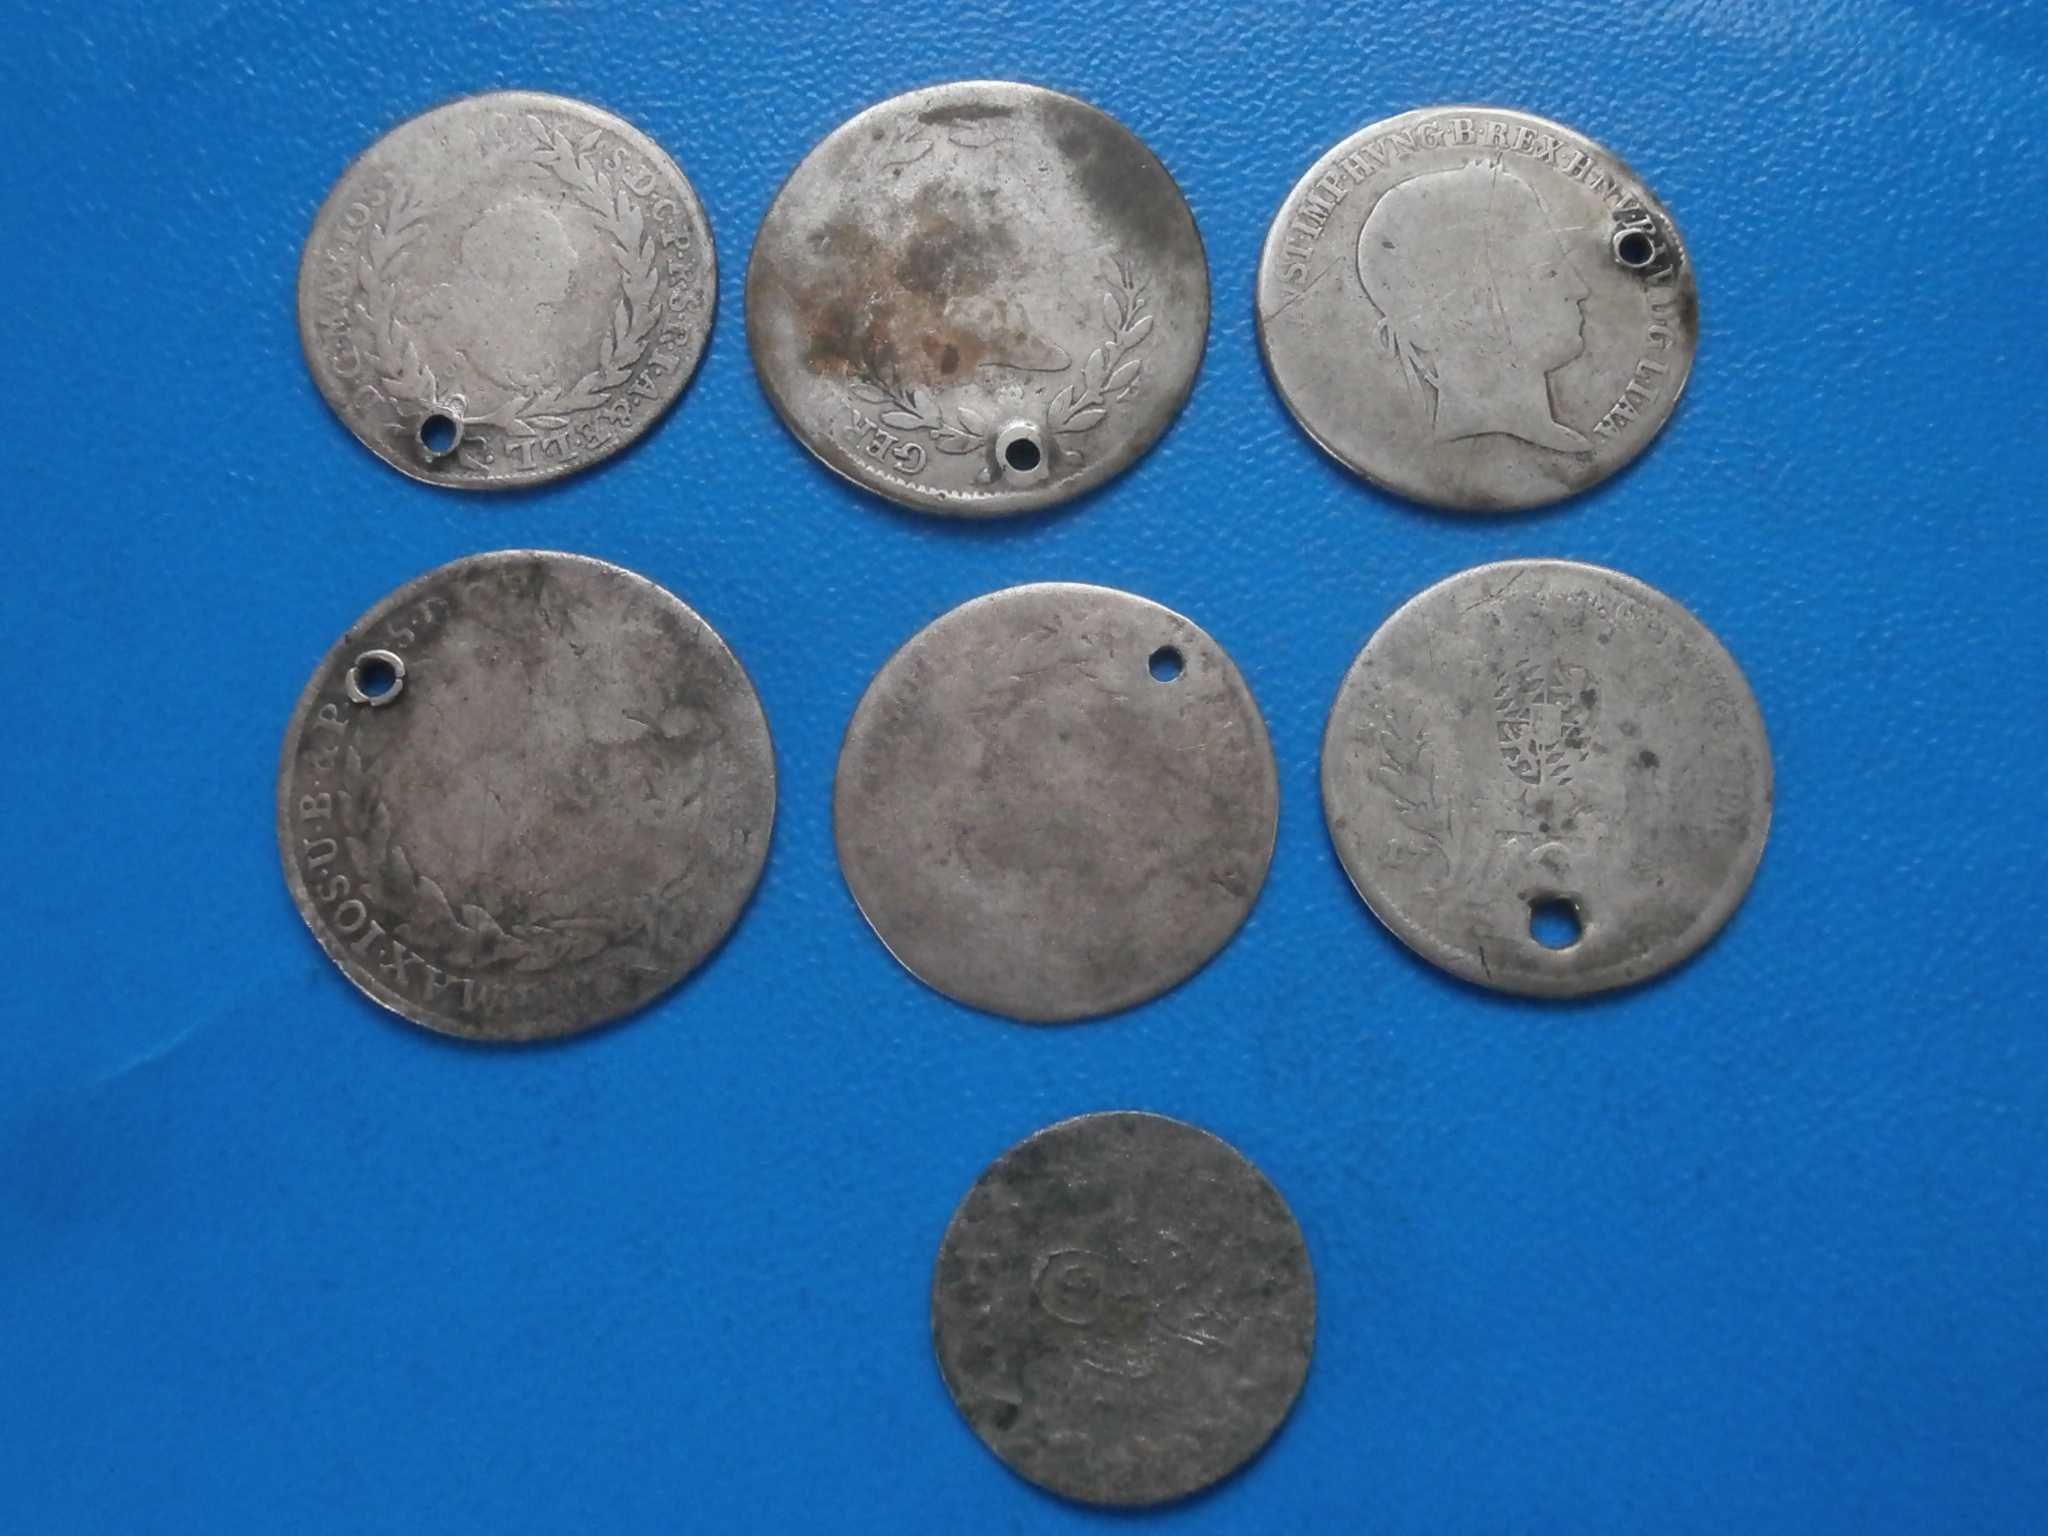 Османски сребърни монети, 1 драхма 1911,1 динар 1904, 25 стотинки 1951